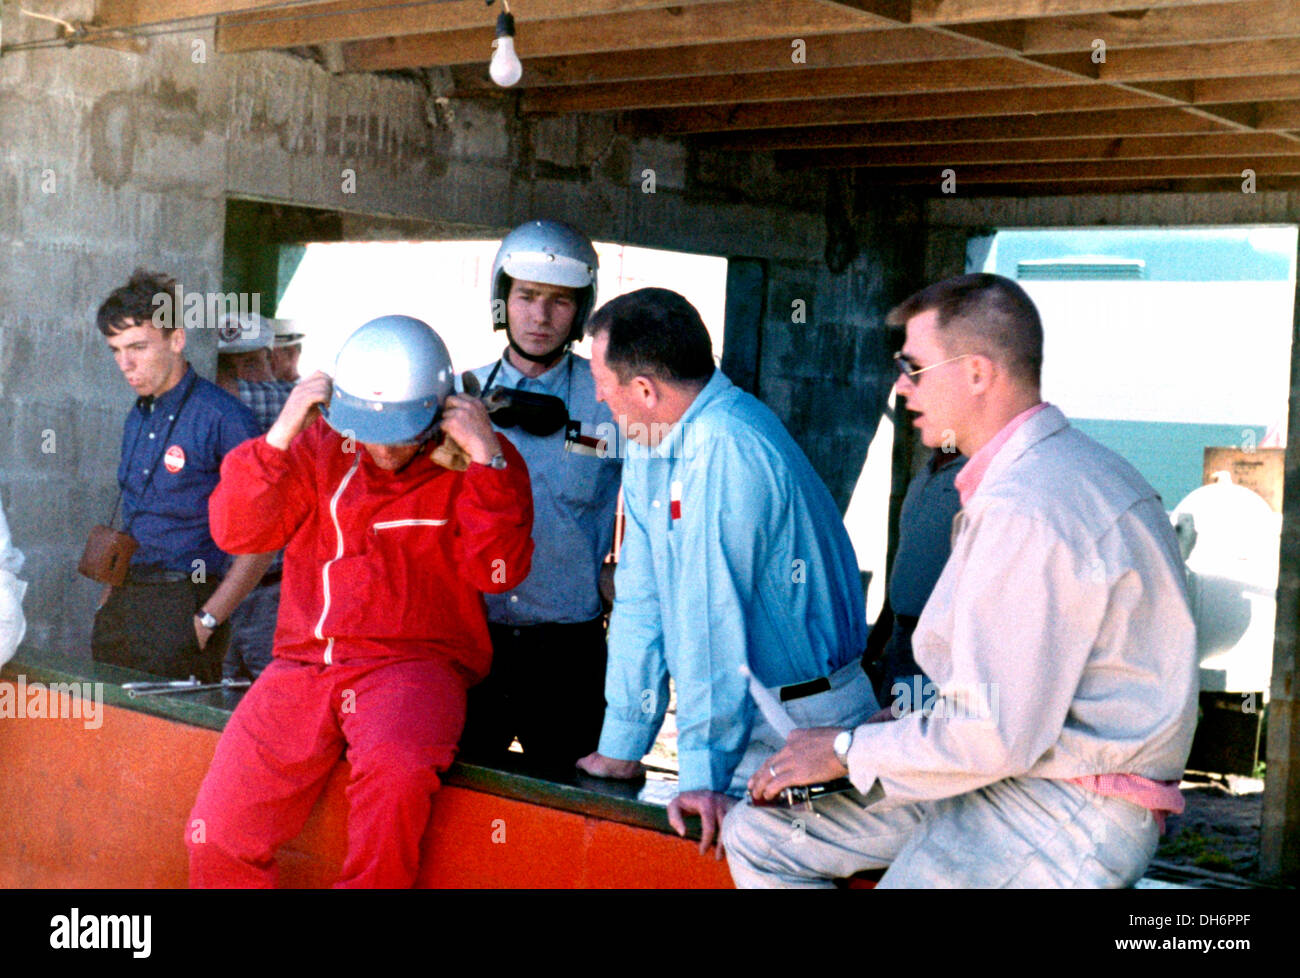 Groß Jim Hall mit Hap Sharp im Wettbewerb mit Chapparal 2D, Gruben an der Sebring 12 Stunden Meisterschaft, Florida, USA, 26. März 1966. Stockfoto